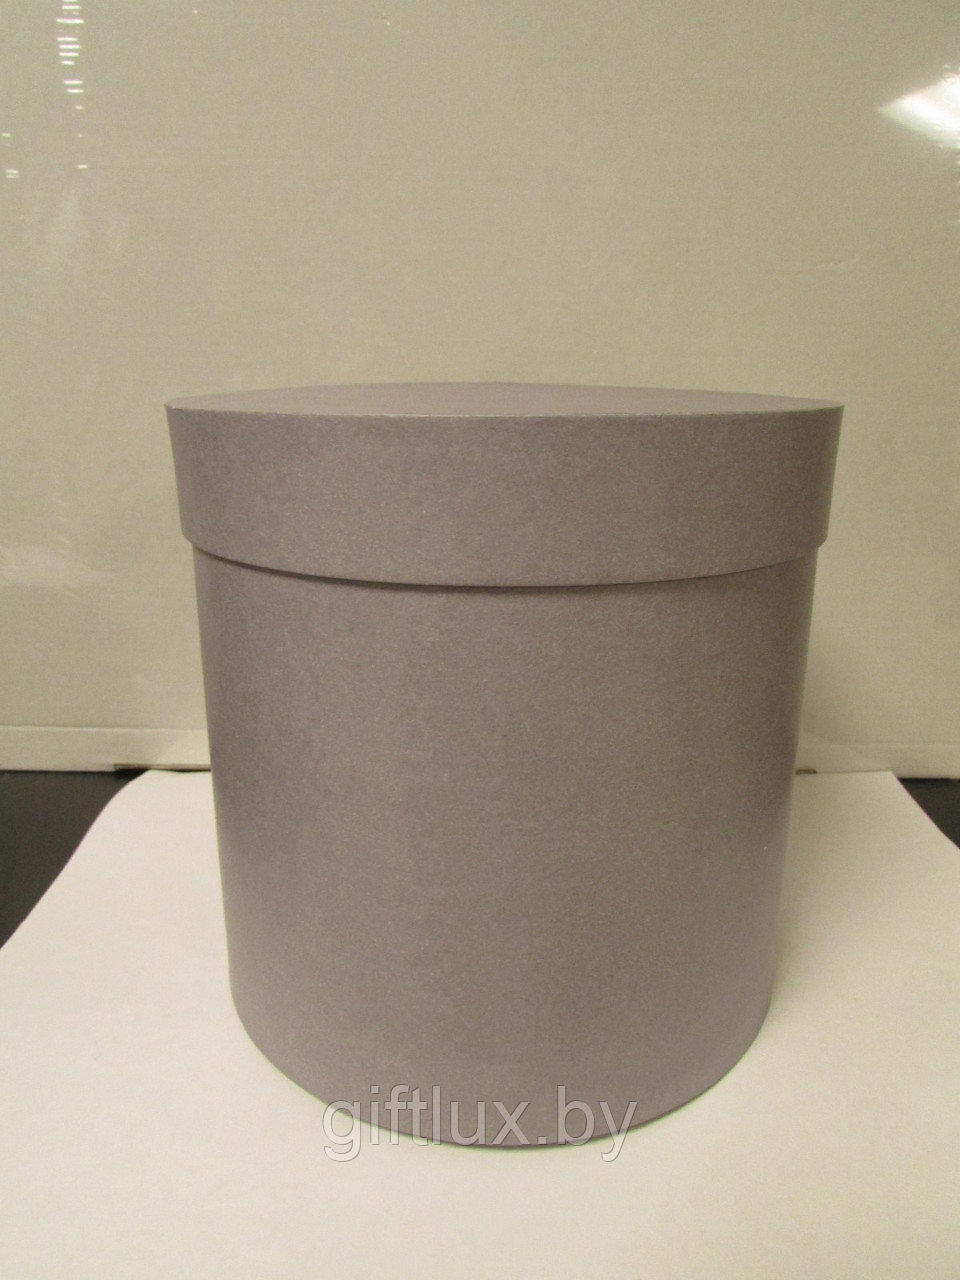 Коробка подарочная круглая "Однотон",15*15 см графит